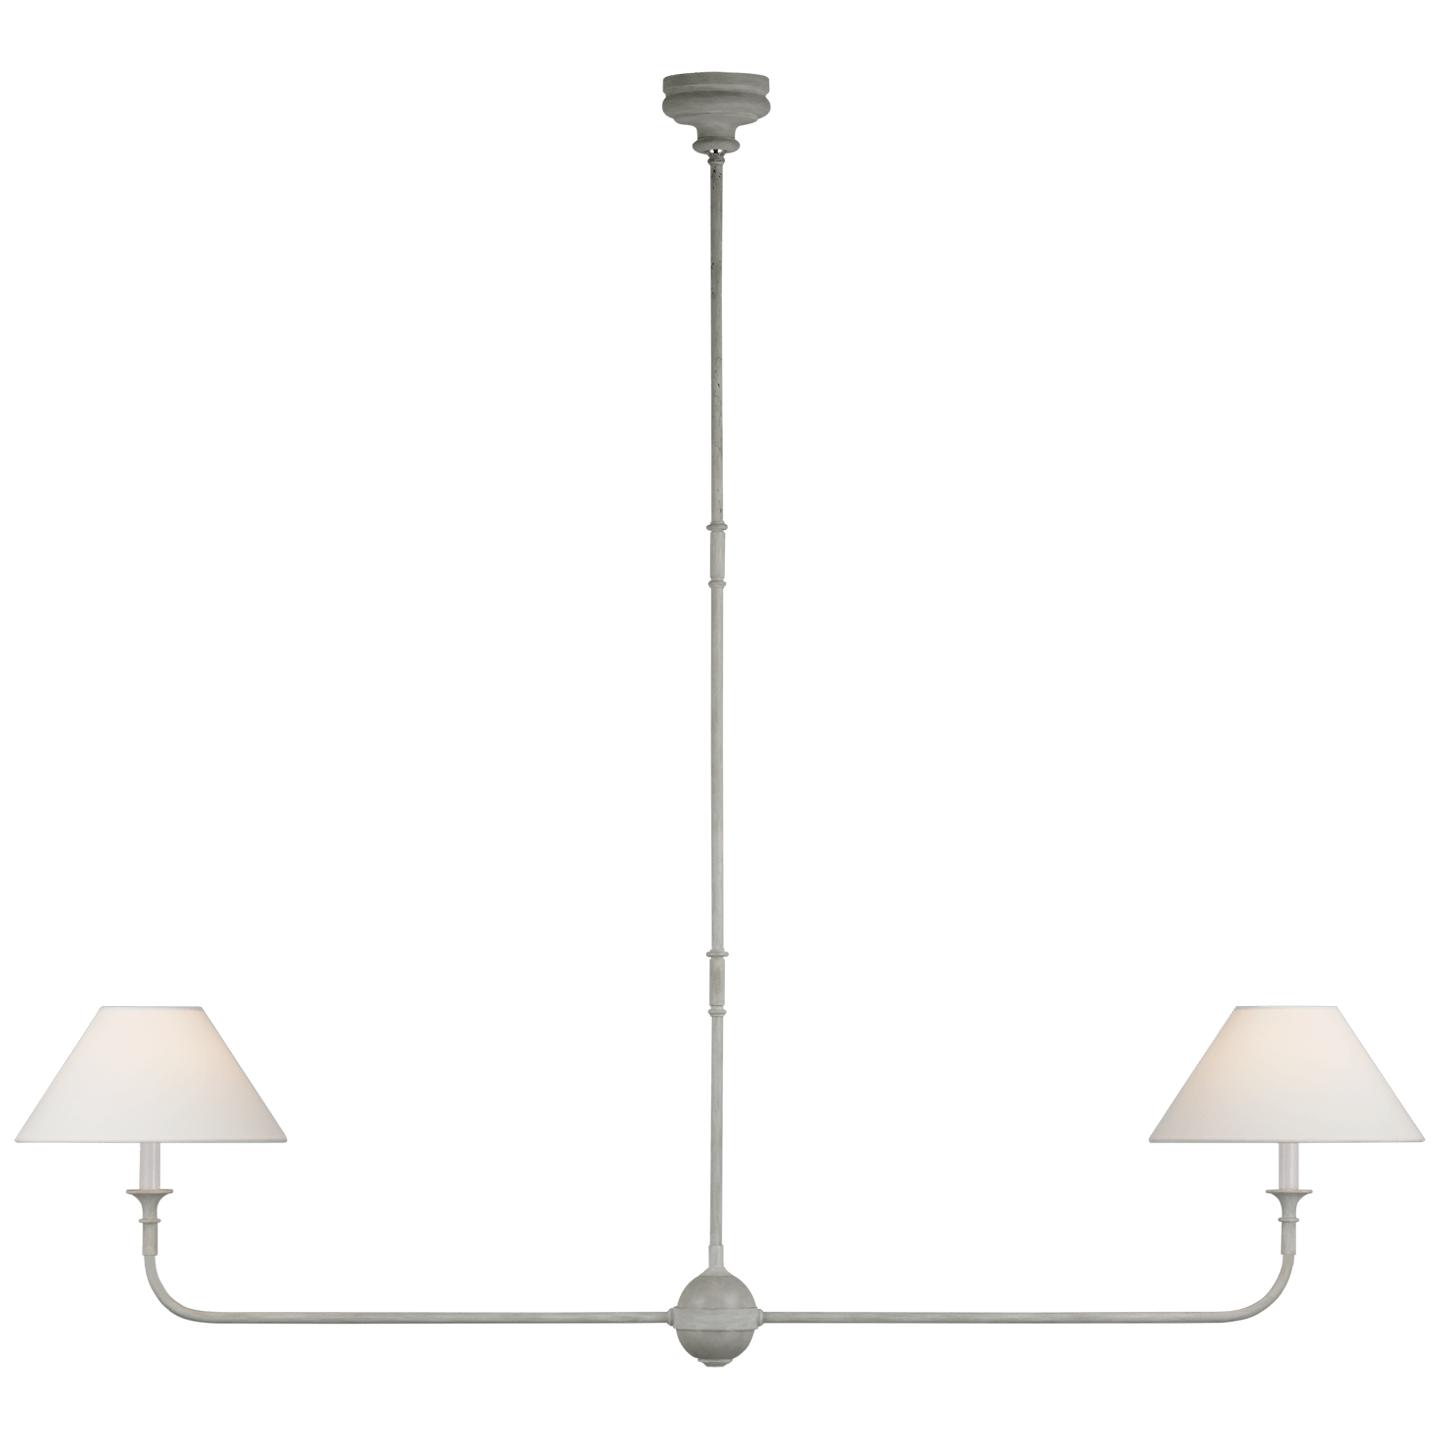 Купить Подвесной светильник Piaf Large Two Light Linear Pendant в интернет-магазине roooms.ru